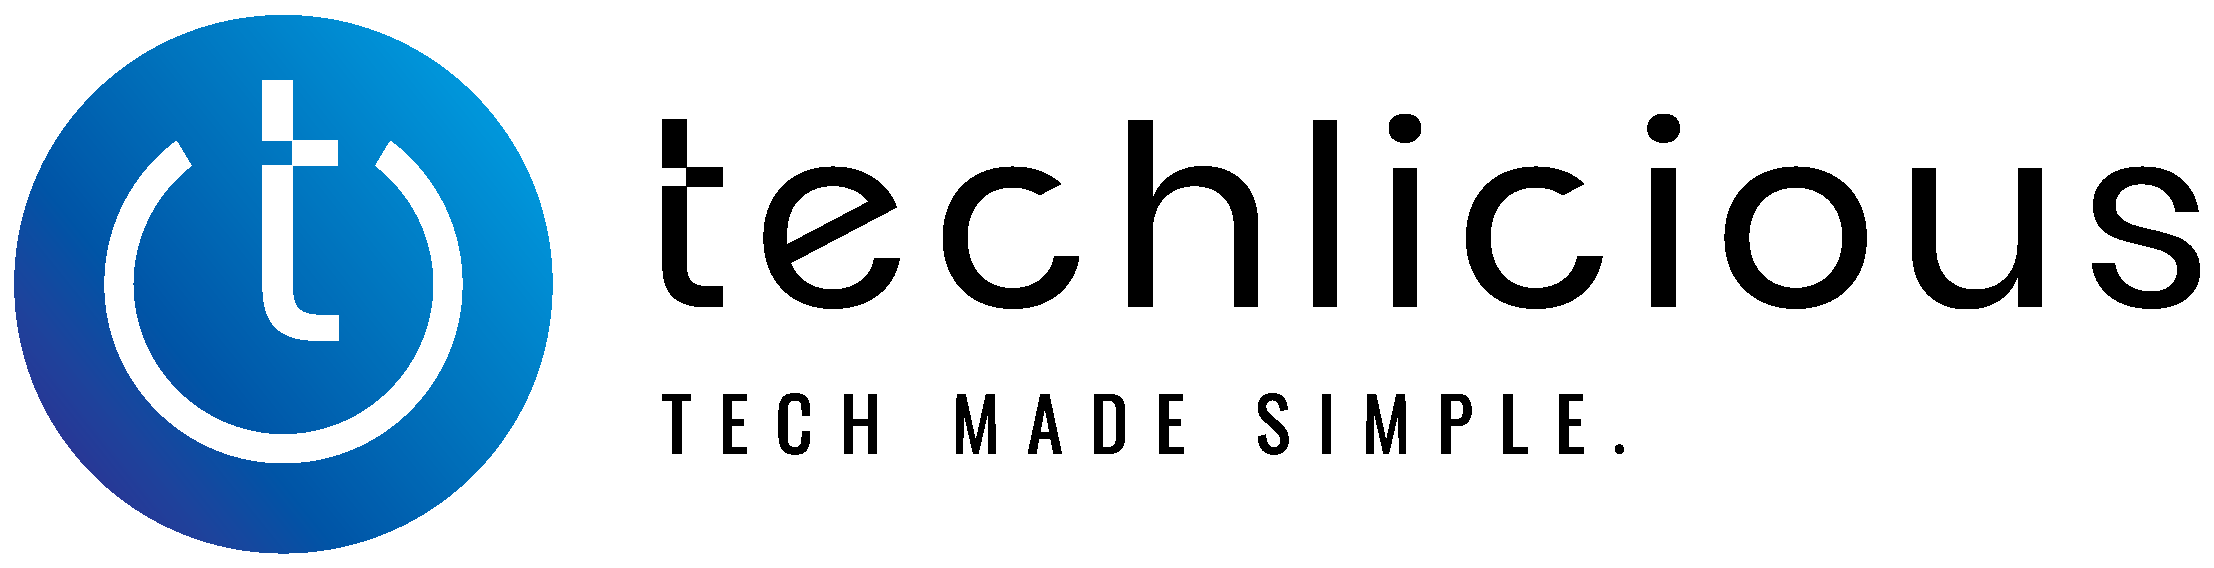 techlicious logo